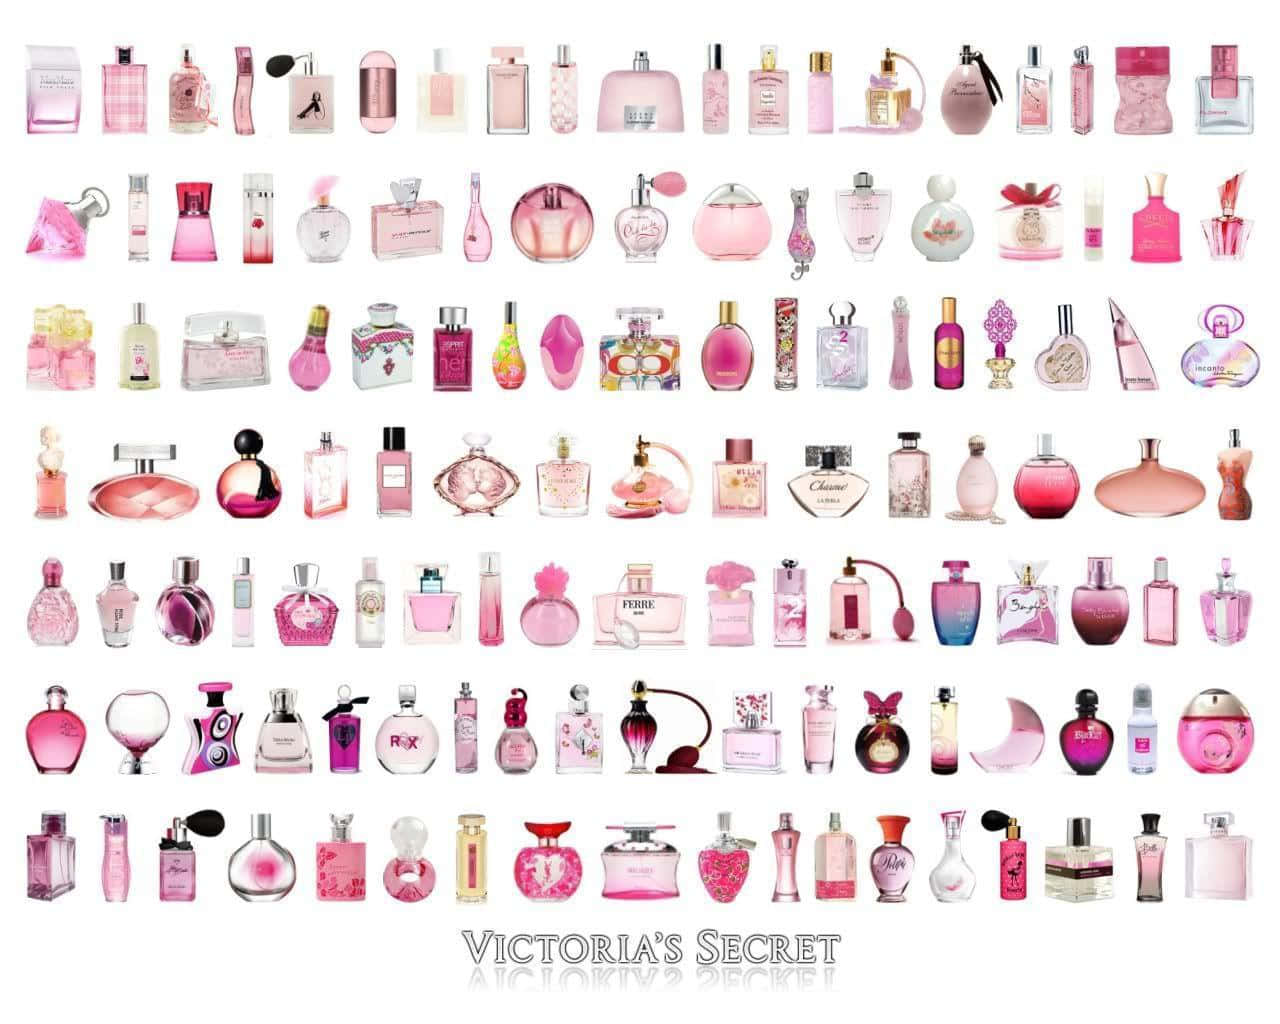 Ángelesde Victoria's Secret Mostrando La Última Colección